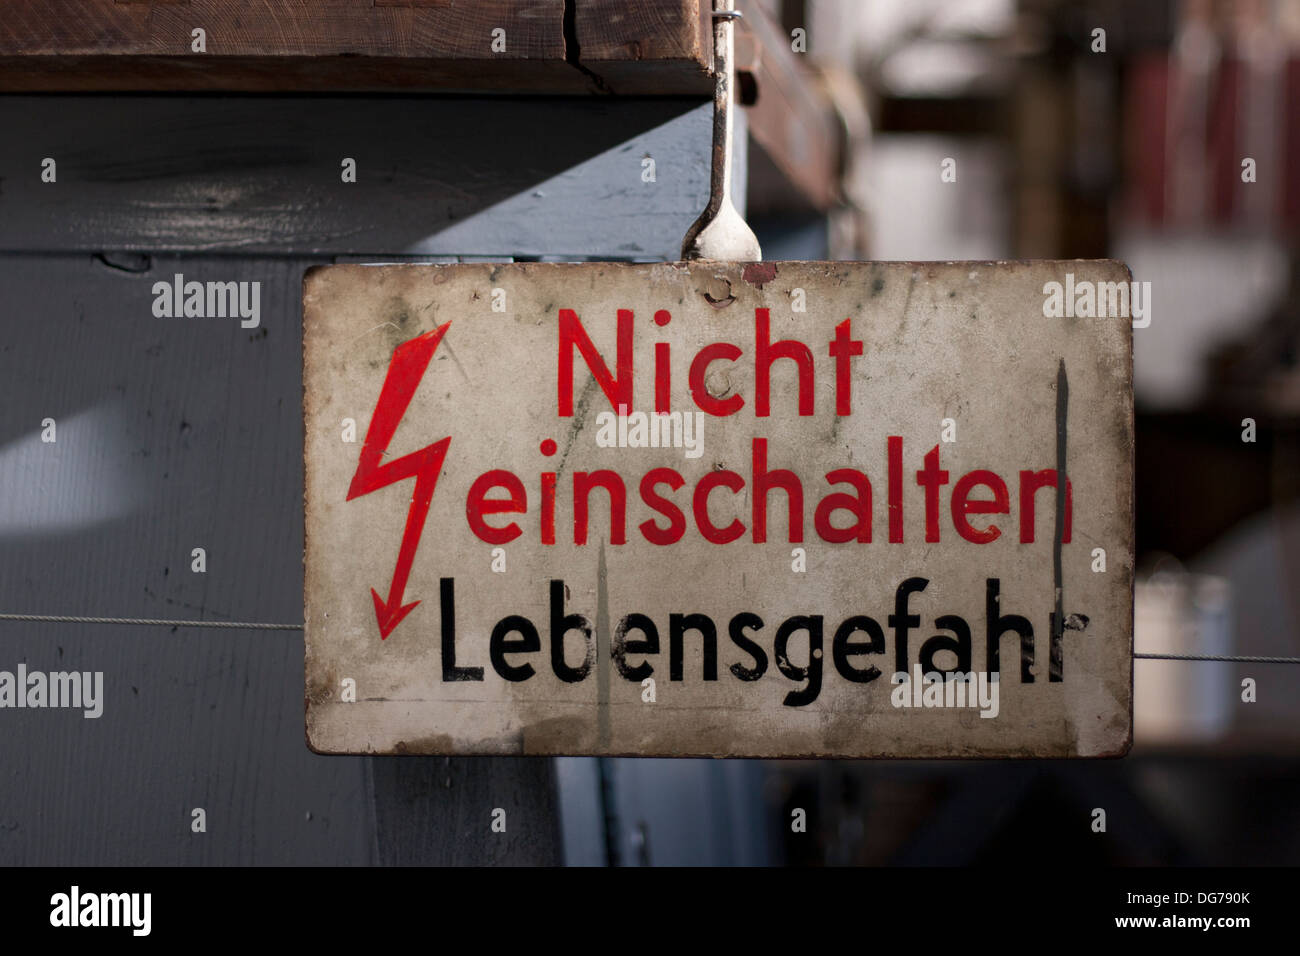 Nicht einschalten Lebensgefahr Warning Sign Germany Stock Photo